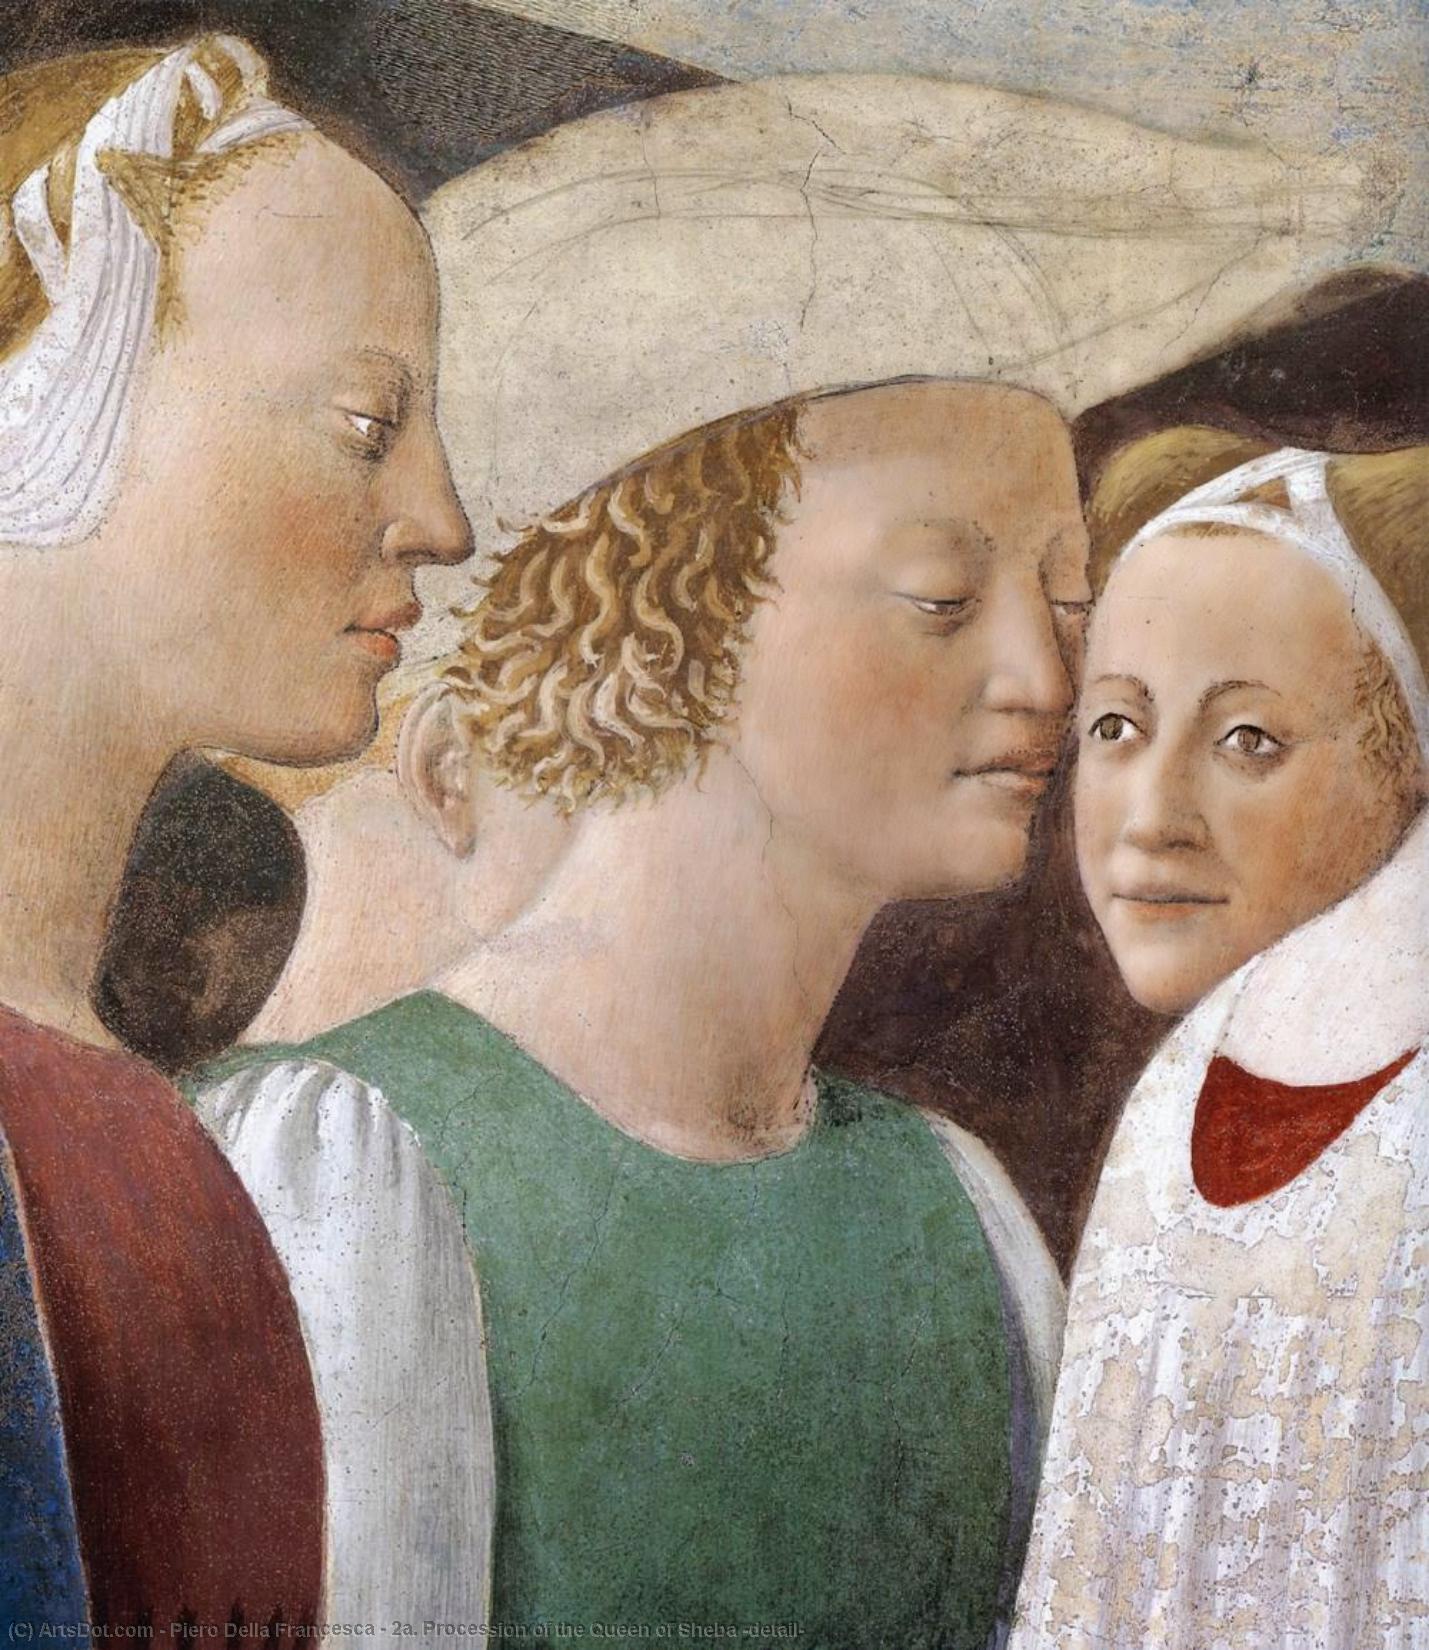 Wikioo.org - Bách khoa toàn thư về mỹ thuật - Vẽ tranh, Tác phẩm nghệ thuật Piero Della Francesca - 2a. Procession of the Queen of Sheba (detail)